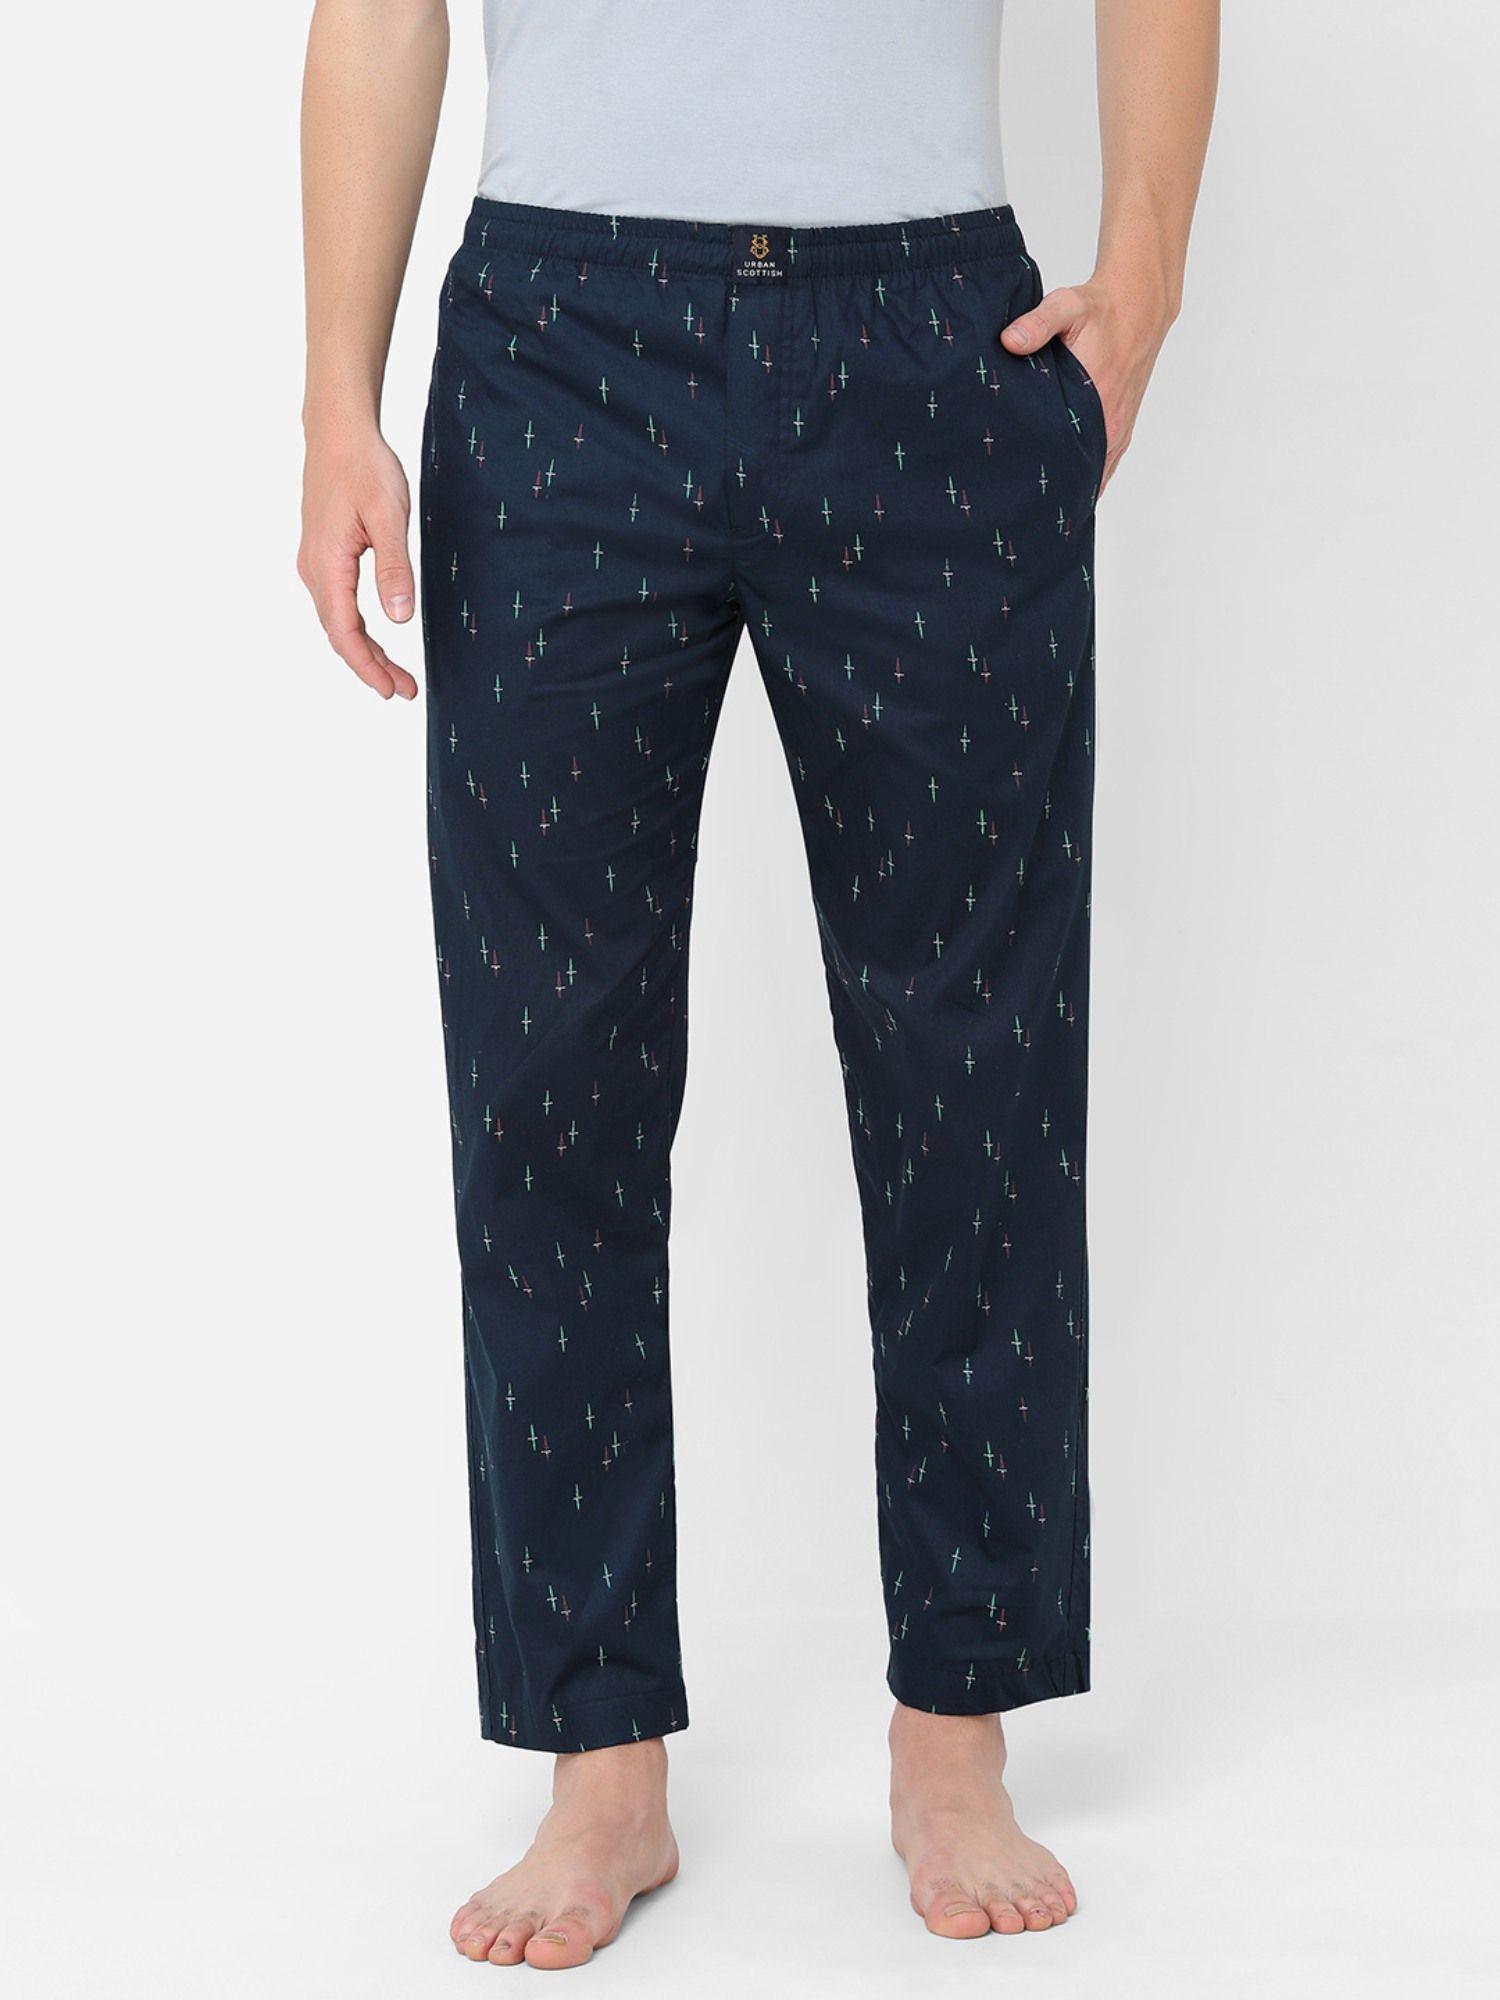 mens printed cotton pyjamas navy blue